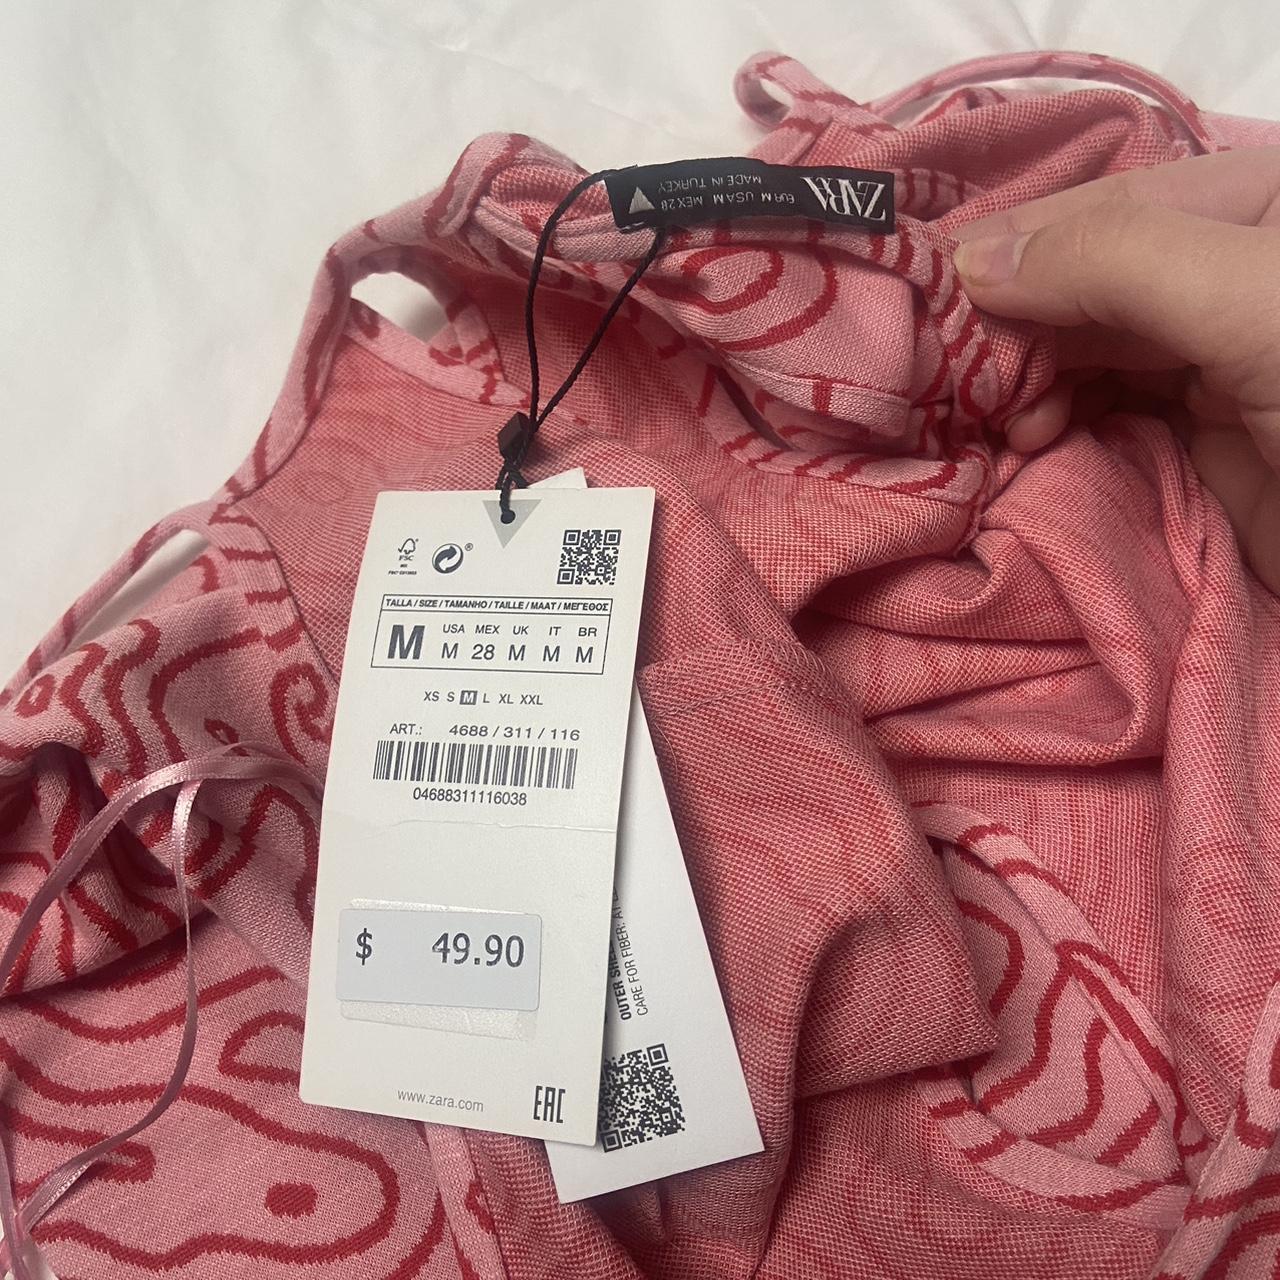 Zara Women's Pink and Red Dress | Depop